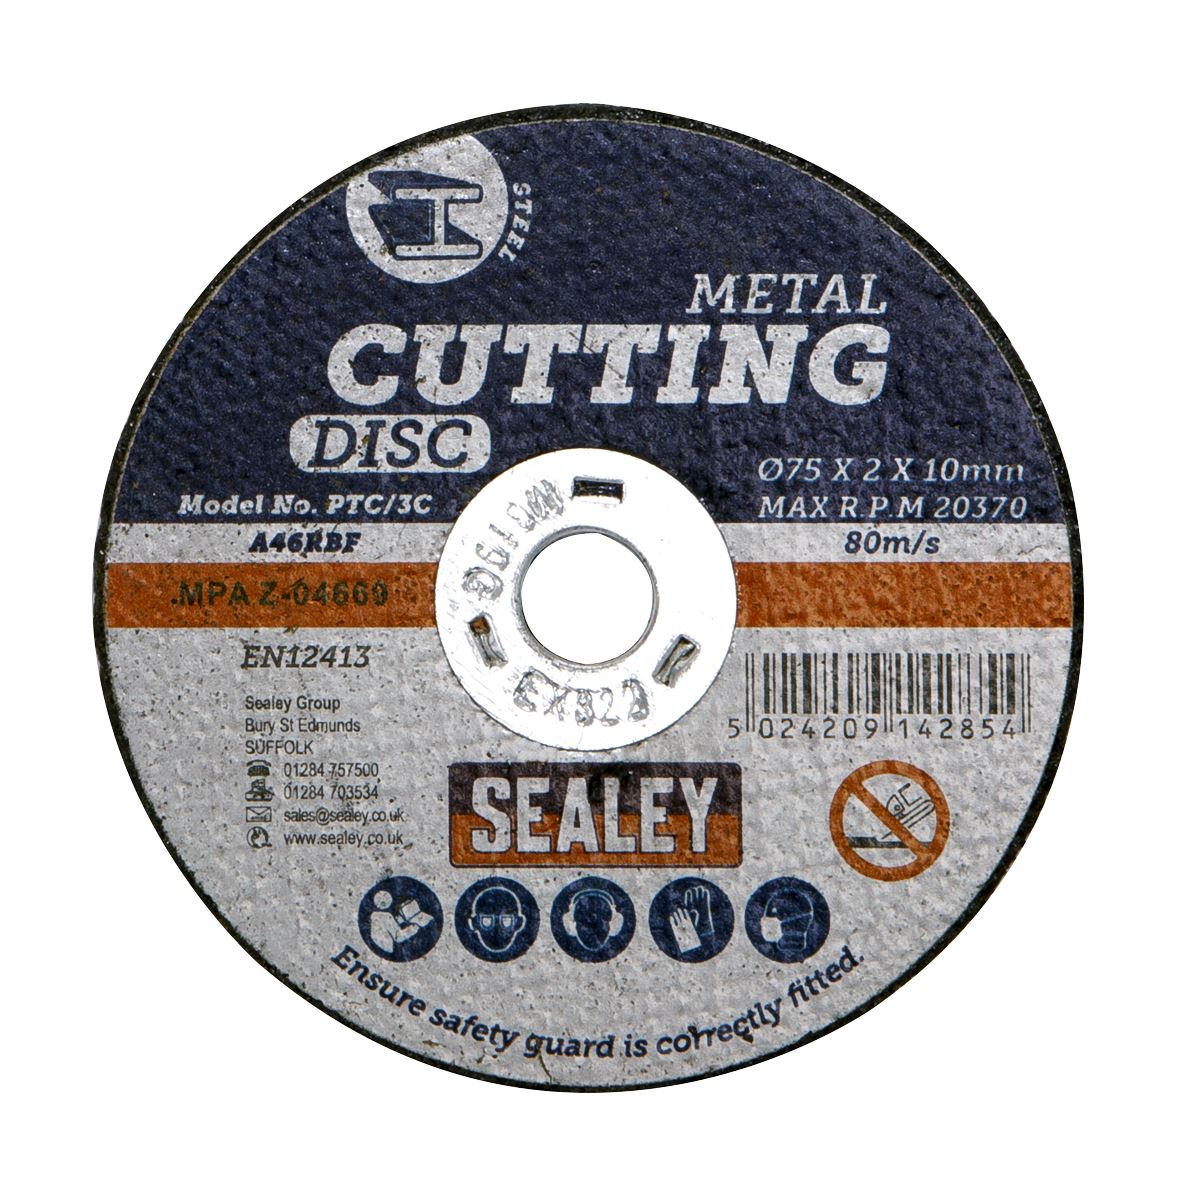 Sealey Cutting Disc Ø75 x 2mm Ø10mm Bore